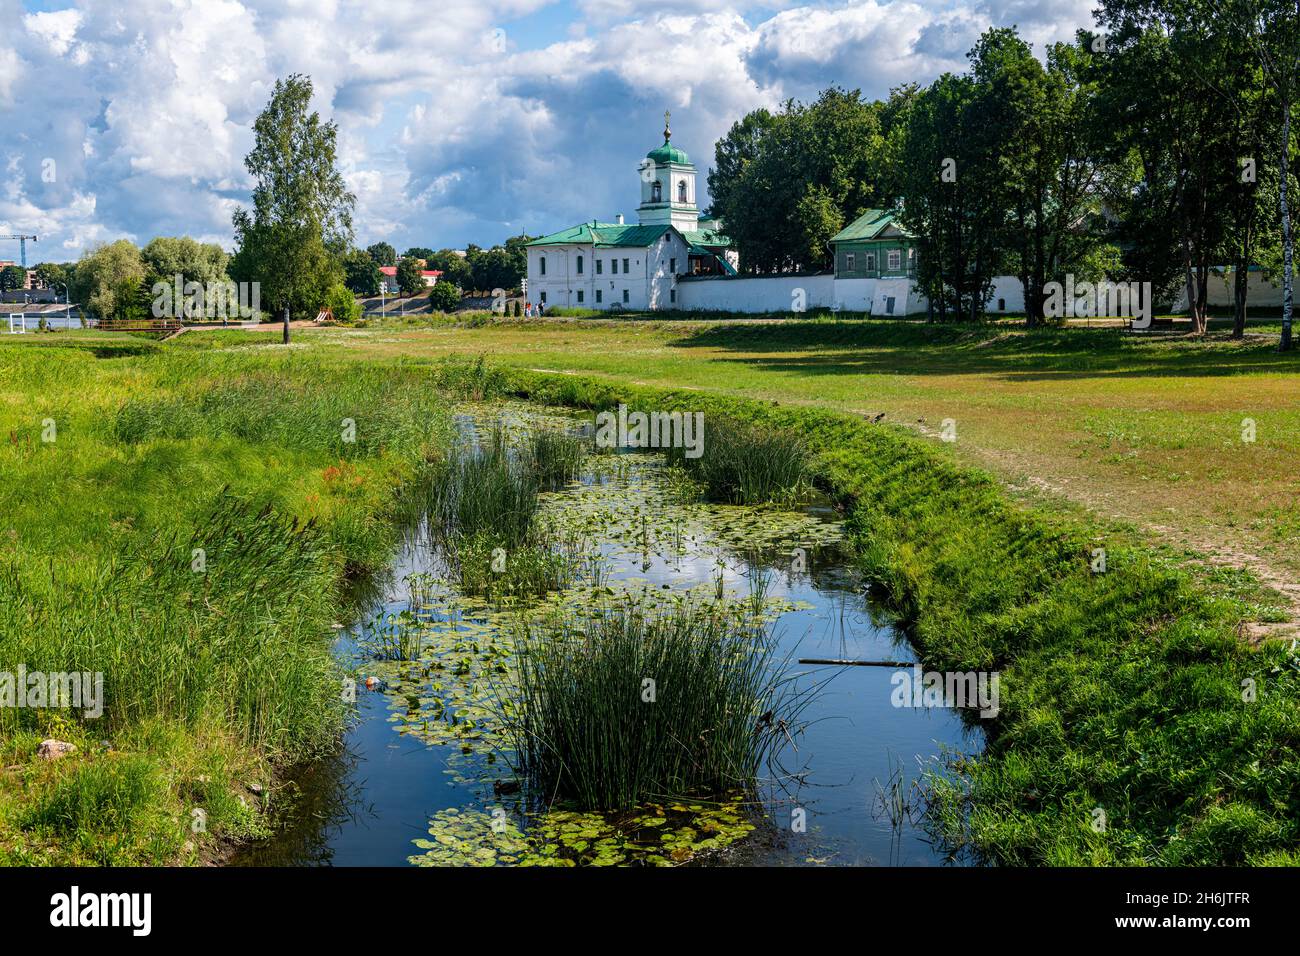 Spaso-Preobrazhenskiy Monastère Mirozhskiy Male, site classé au patrimoine mondial de l'UNESCO, Pskov, Russie, Europe Banque D'Images